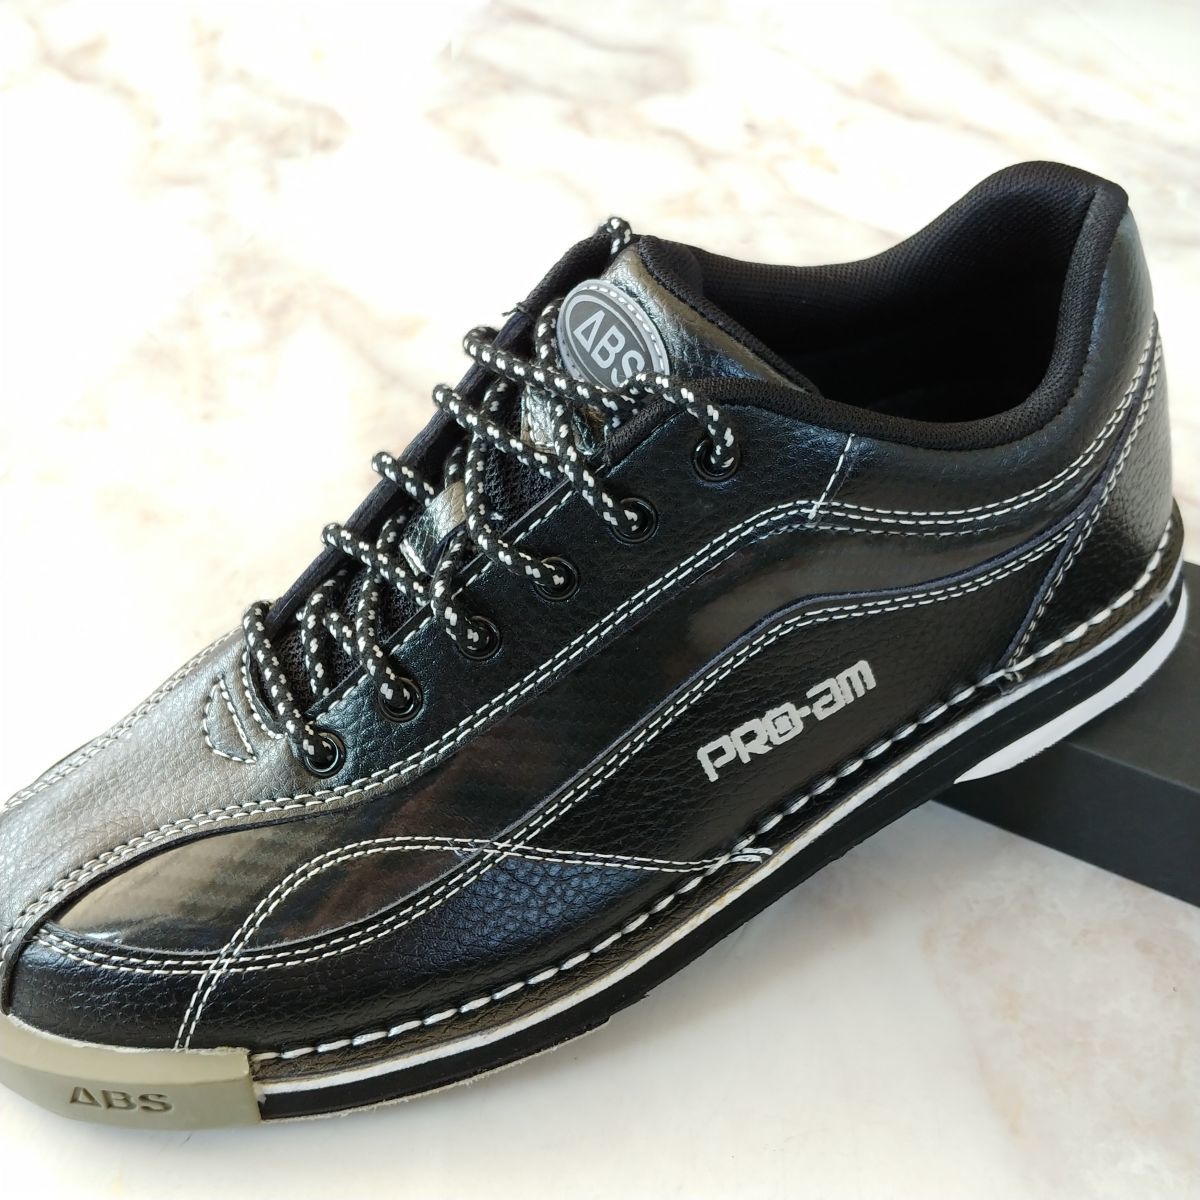 ABS S-570 ブラック ボーリング ボウリング用品 グッズ シューズ 靴